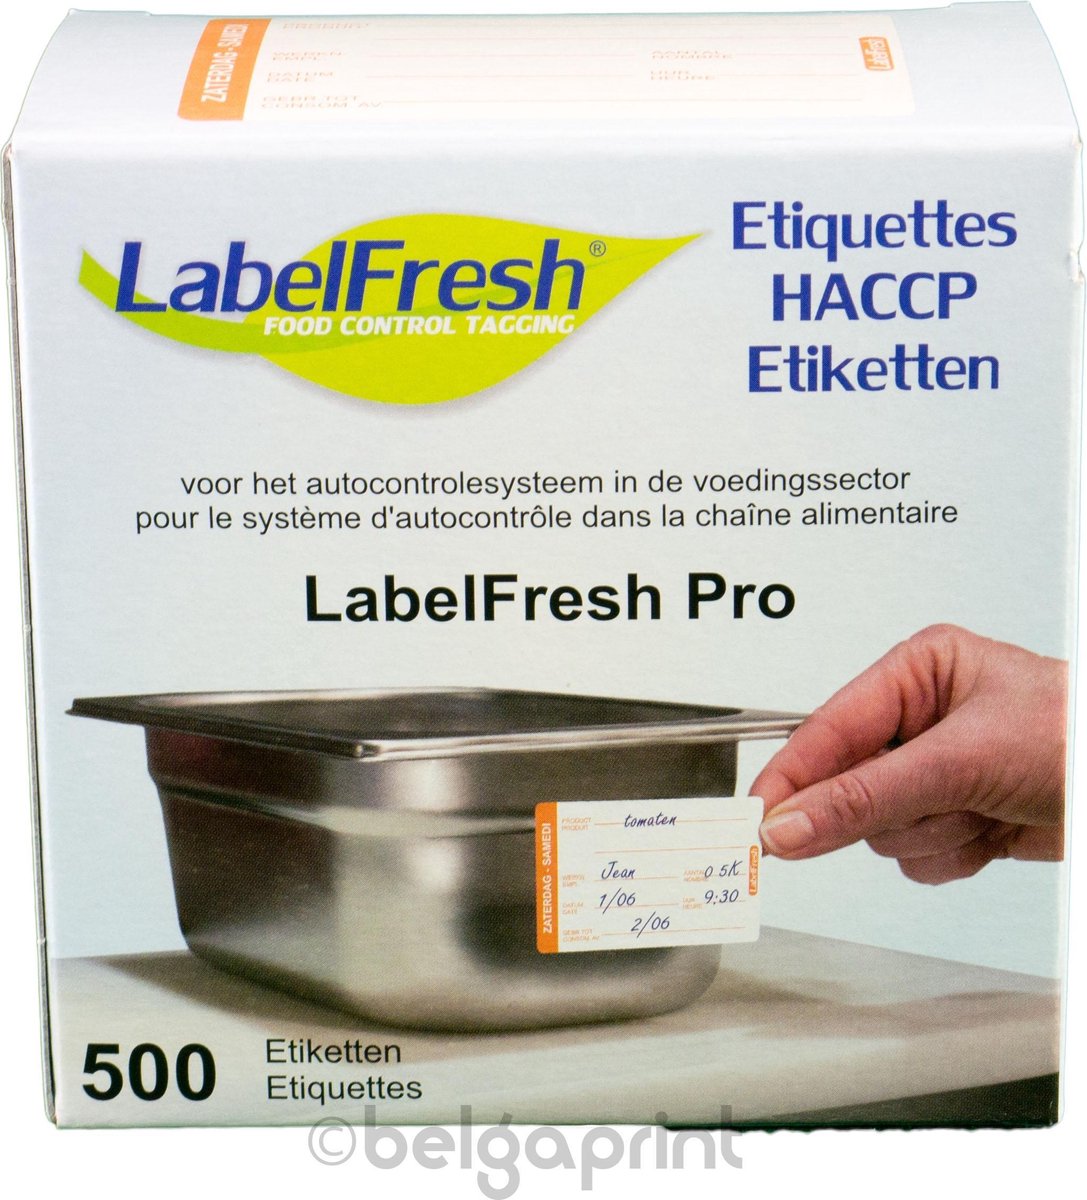 500 LabelFresh Pro - 70x45 mm - zaterdag-samedi - HACCP etiketten / stickers